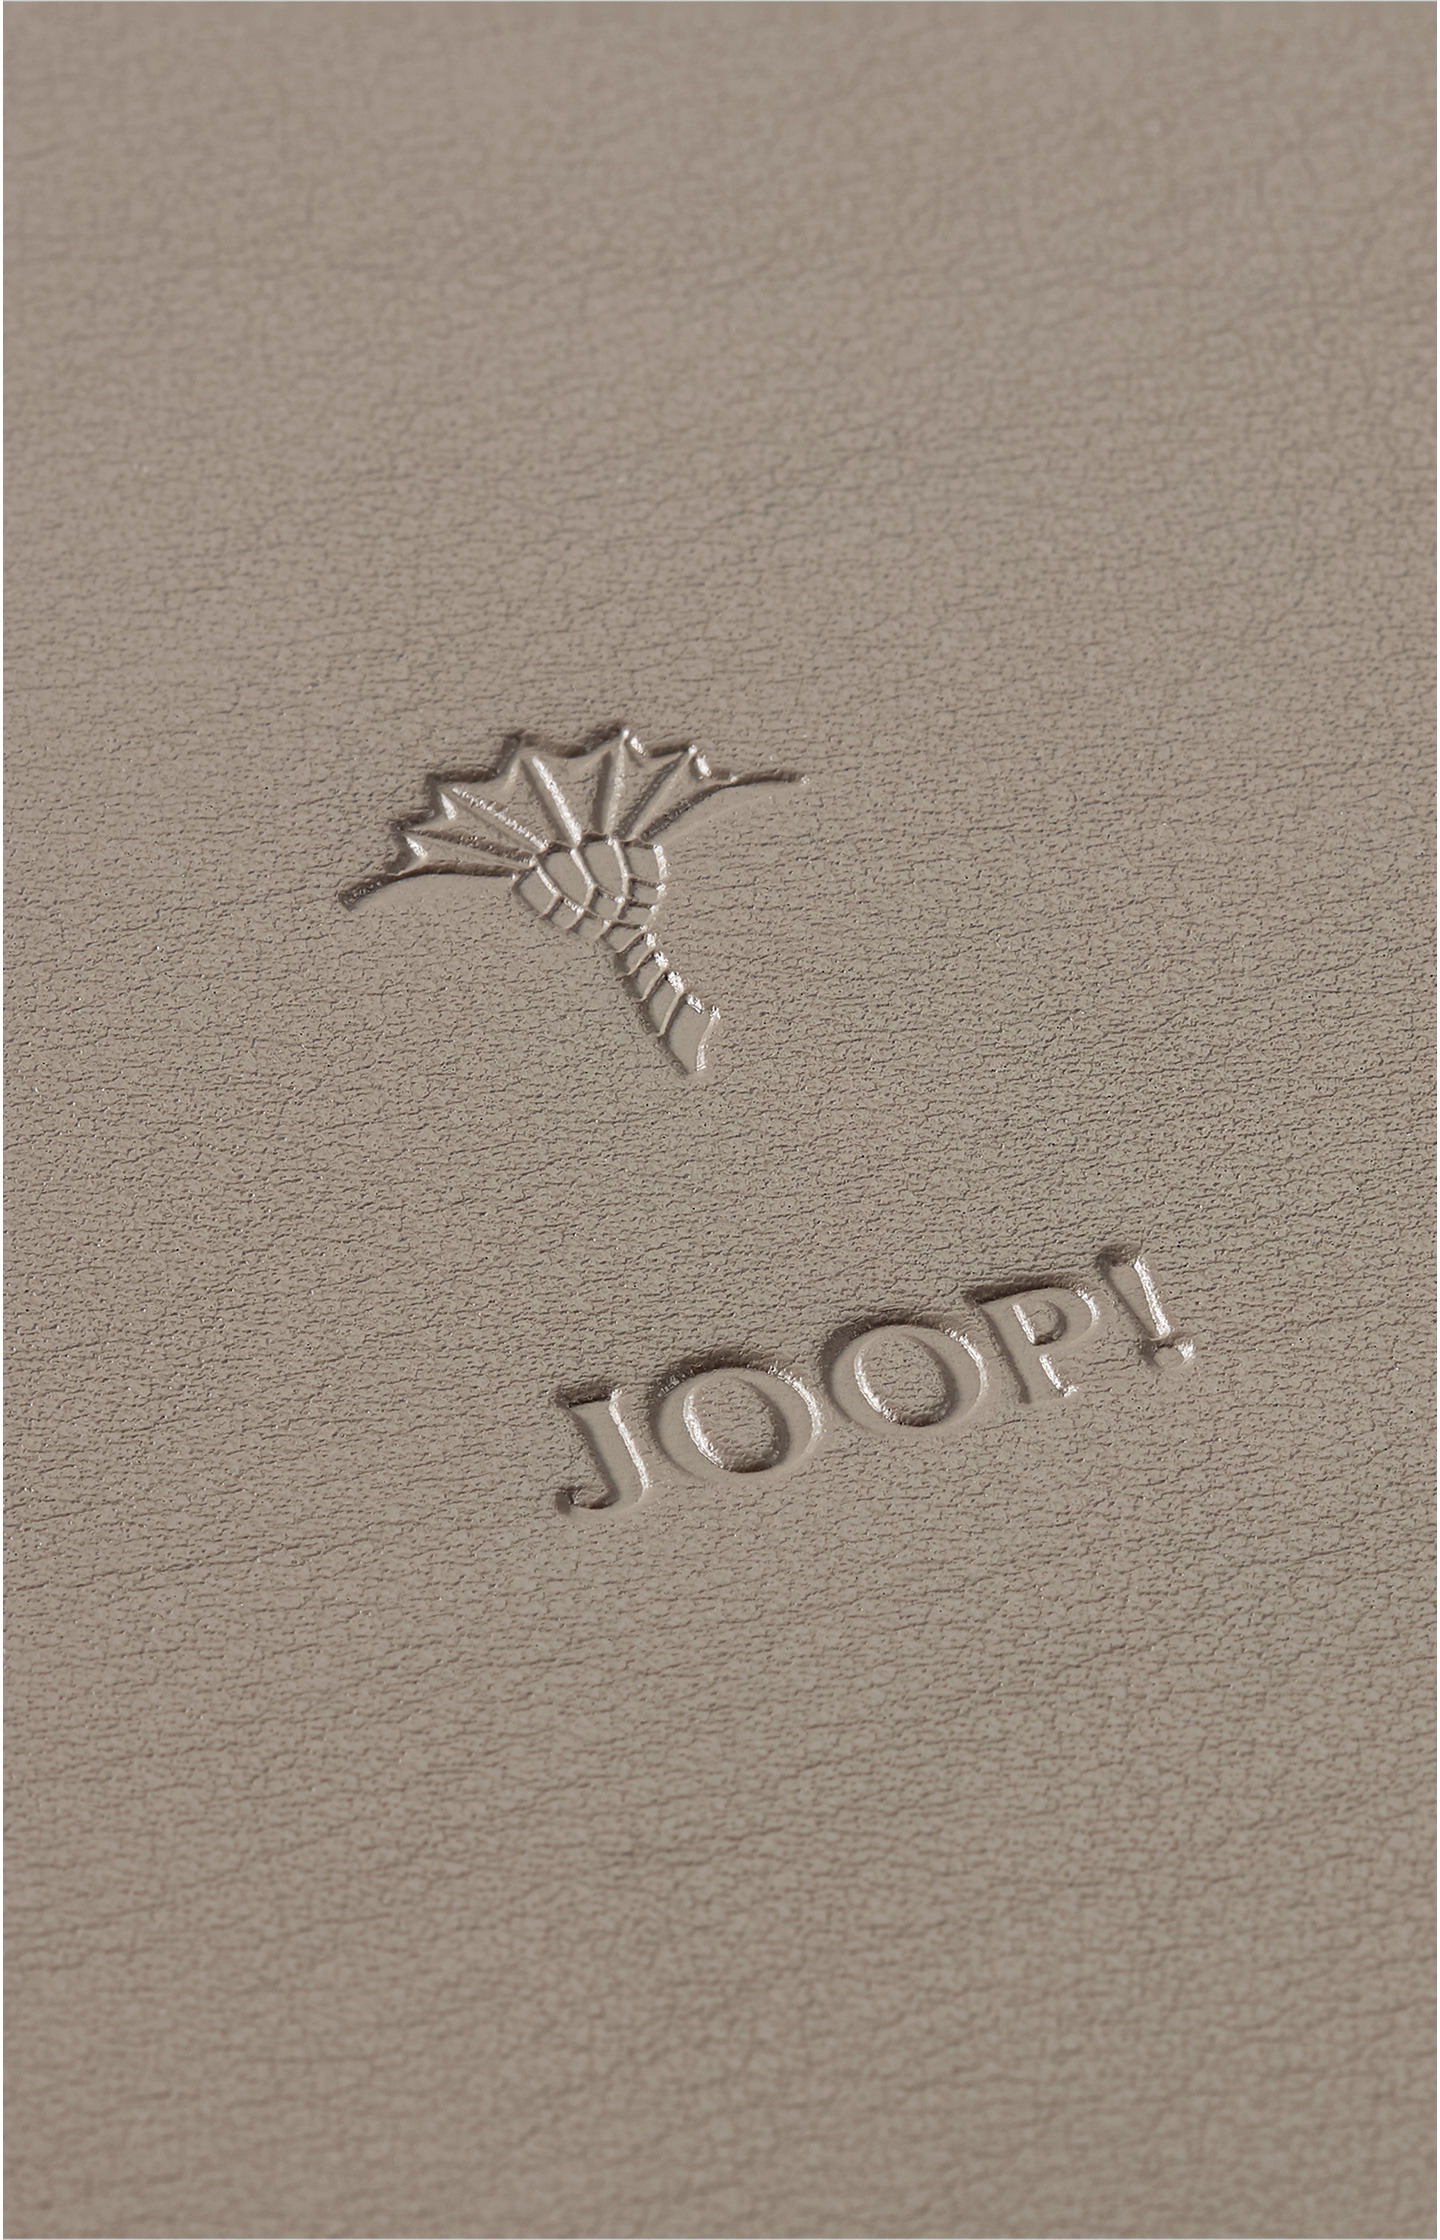 JOOP! Homeline - Rundes Tablett in Grau, klein - im JOOP! Online-Shop